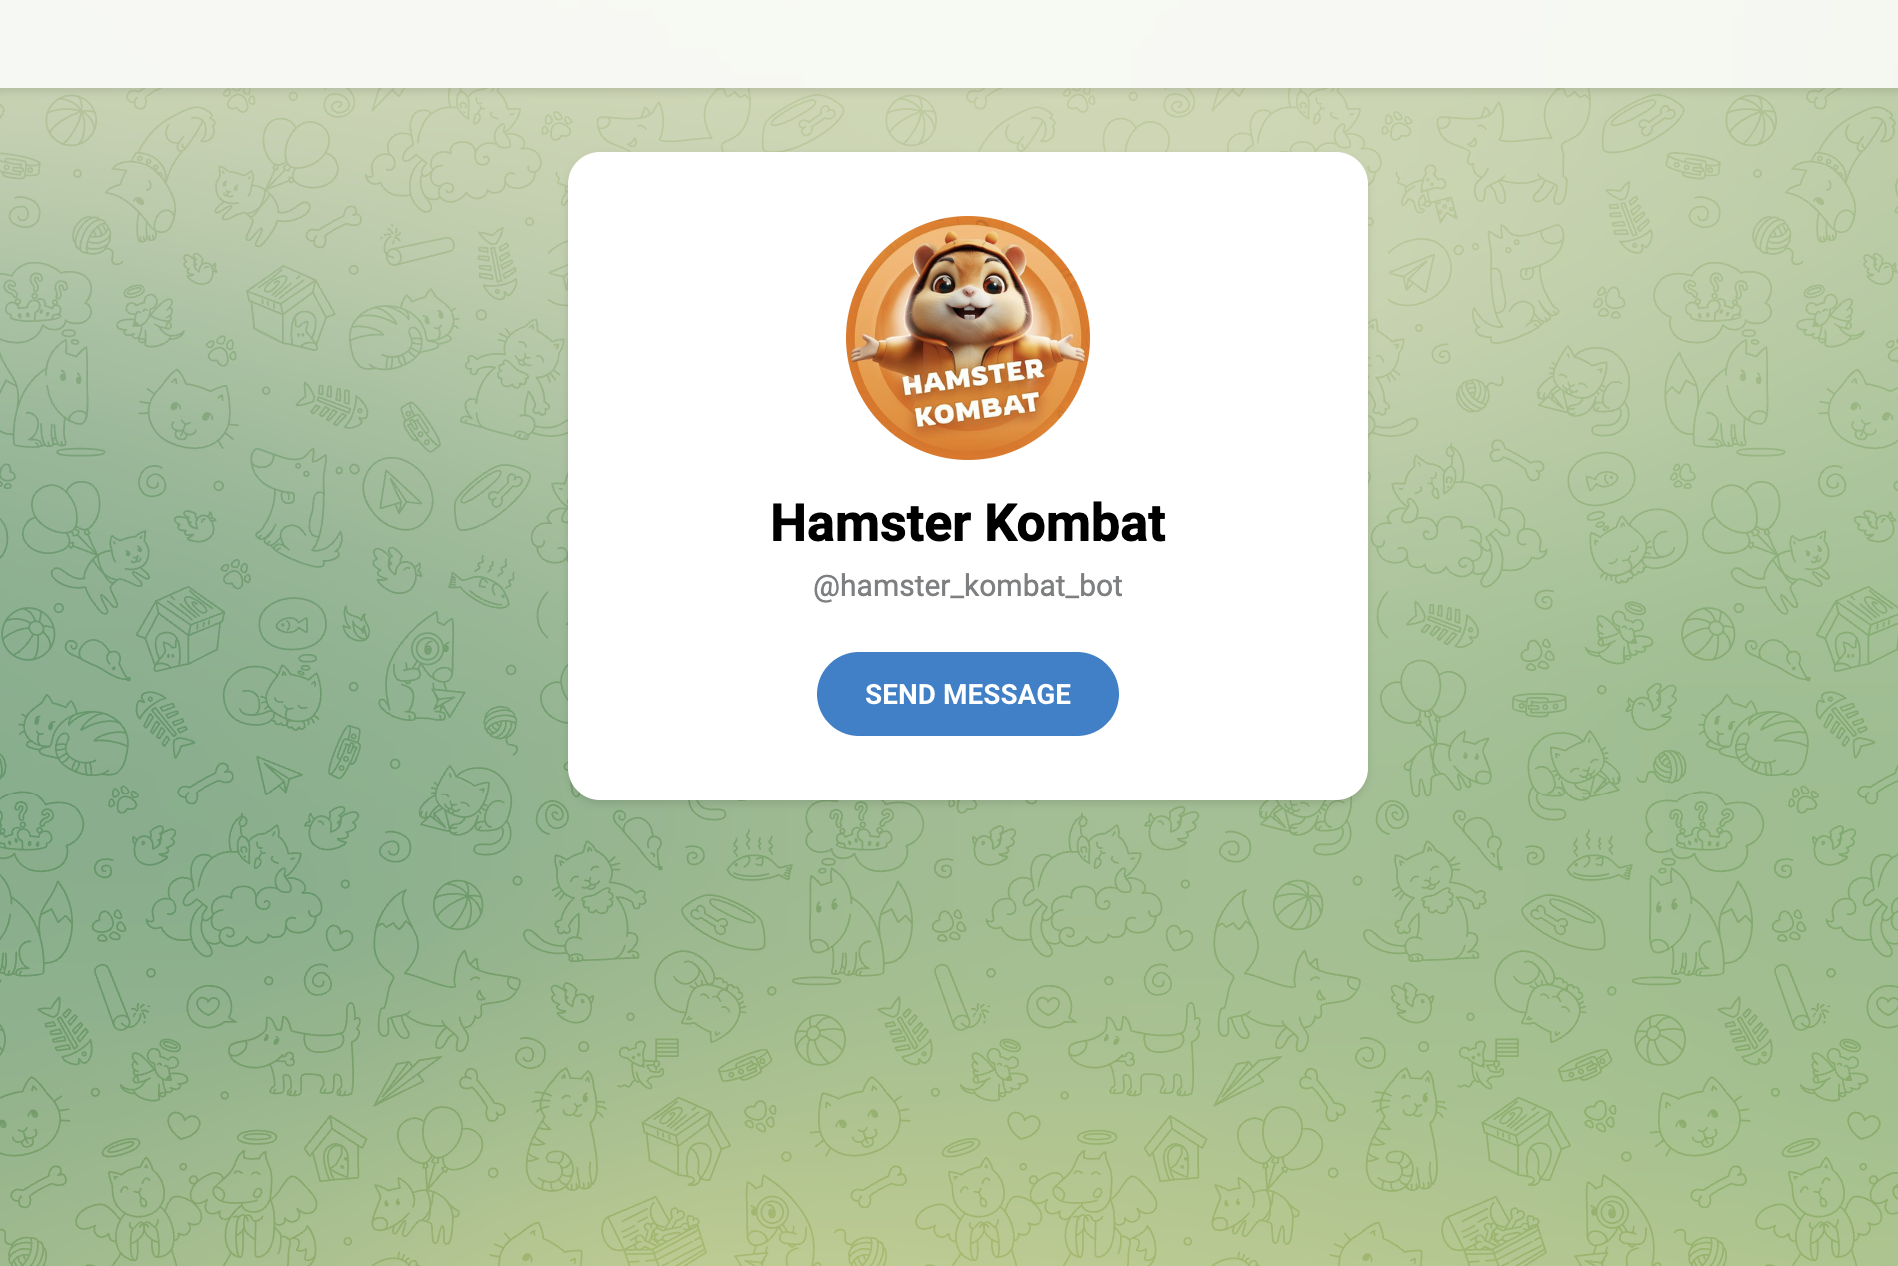 Подробнее о статье Hamster Kombat